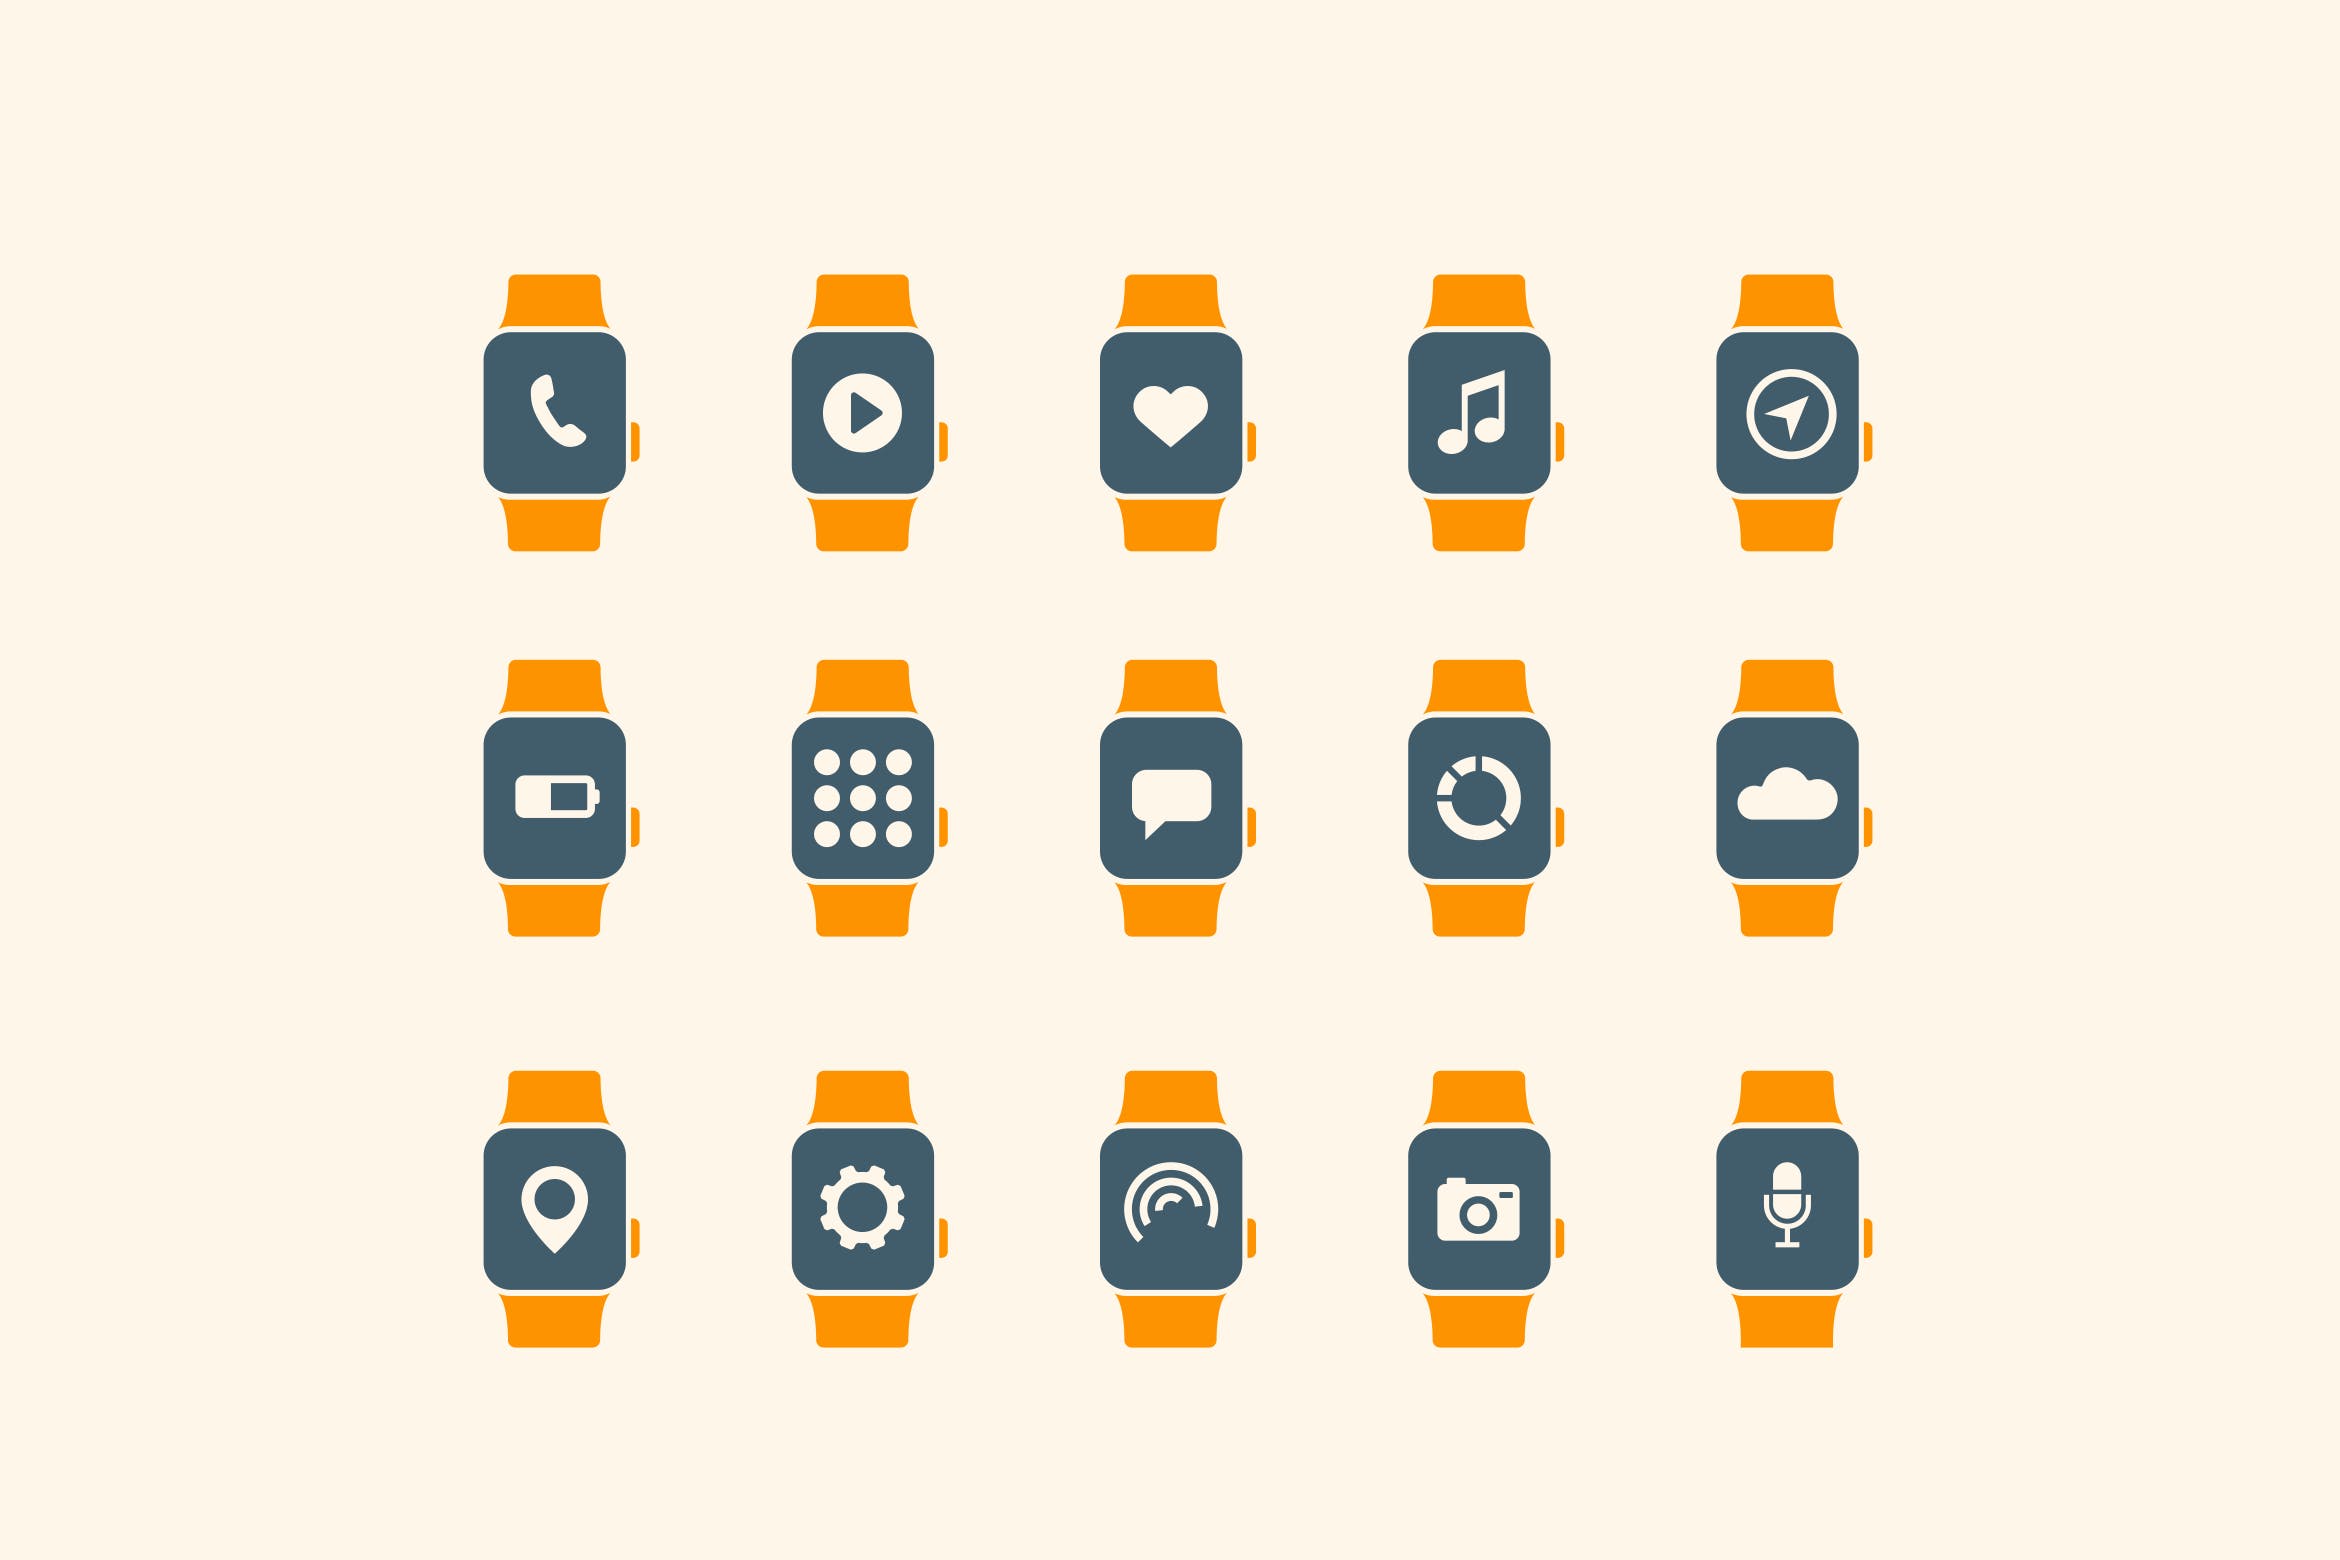 15枚智能手表APP应用主题矢量第一素材精选图标 15 Smart Watch App Icons插图